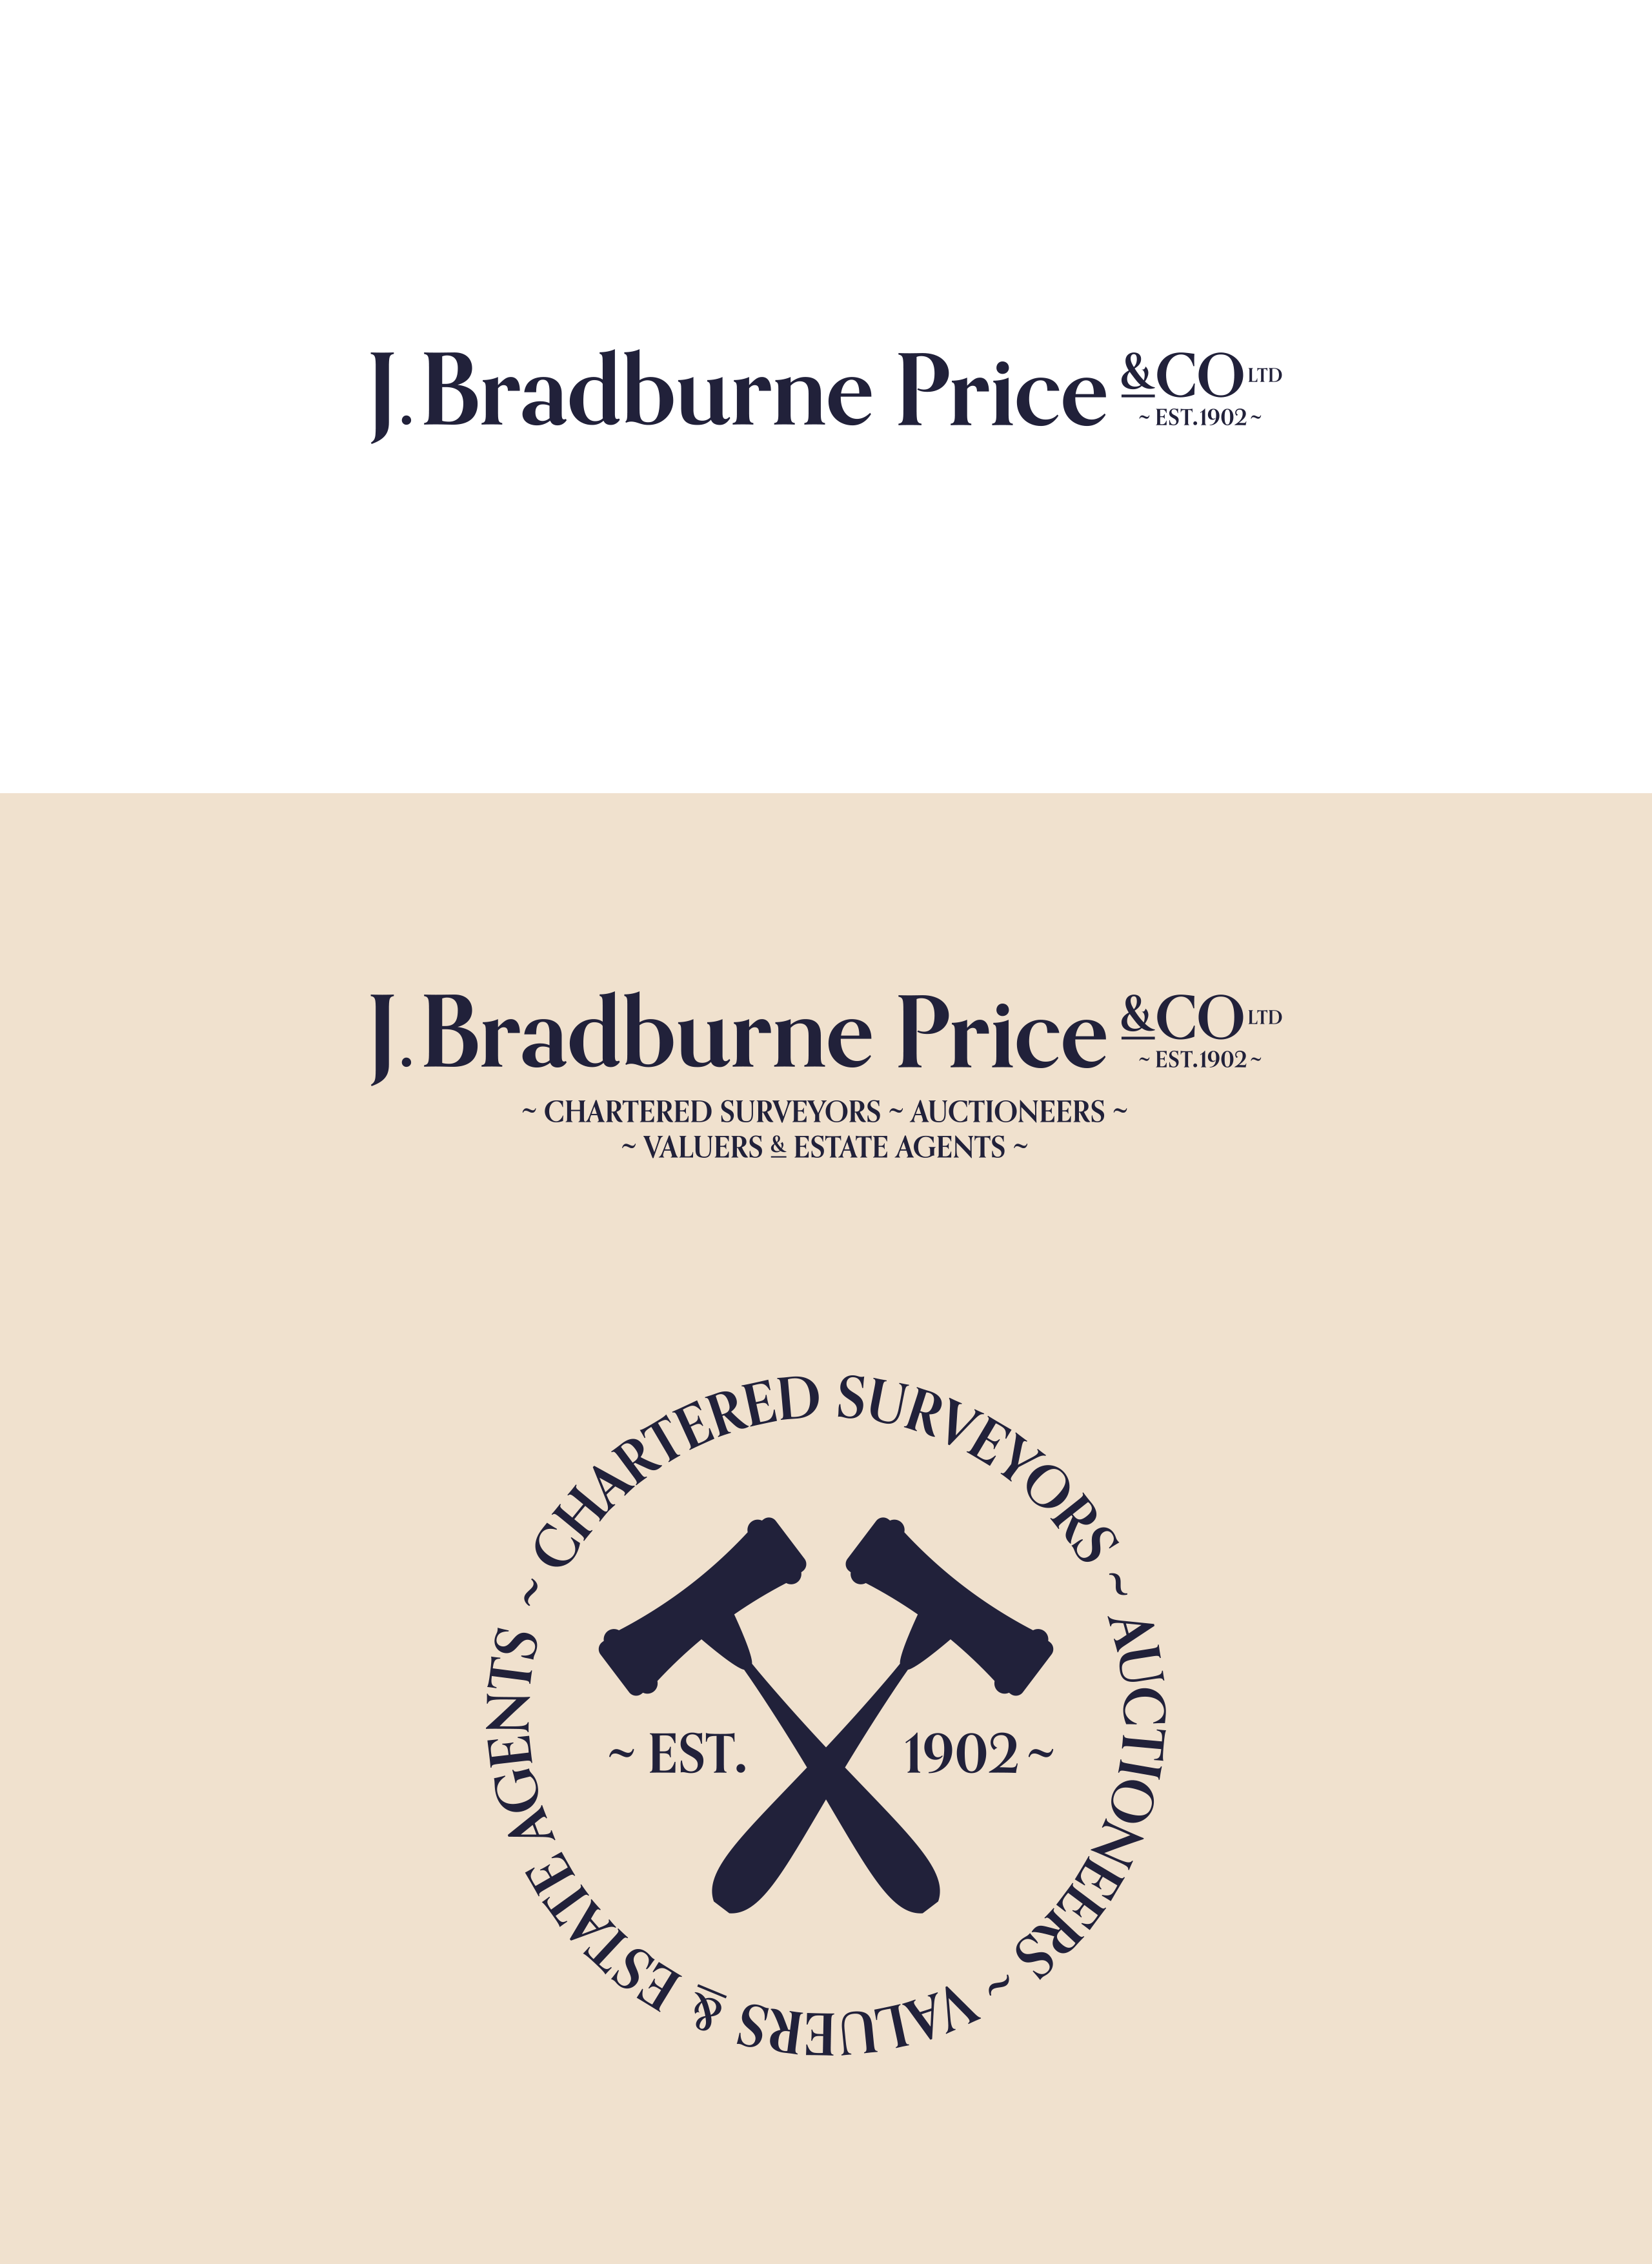 J Bradburne Price & Co Logo Design Variations